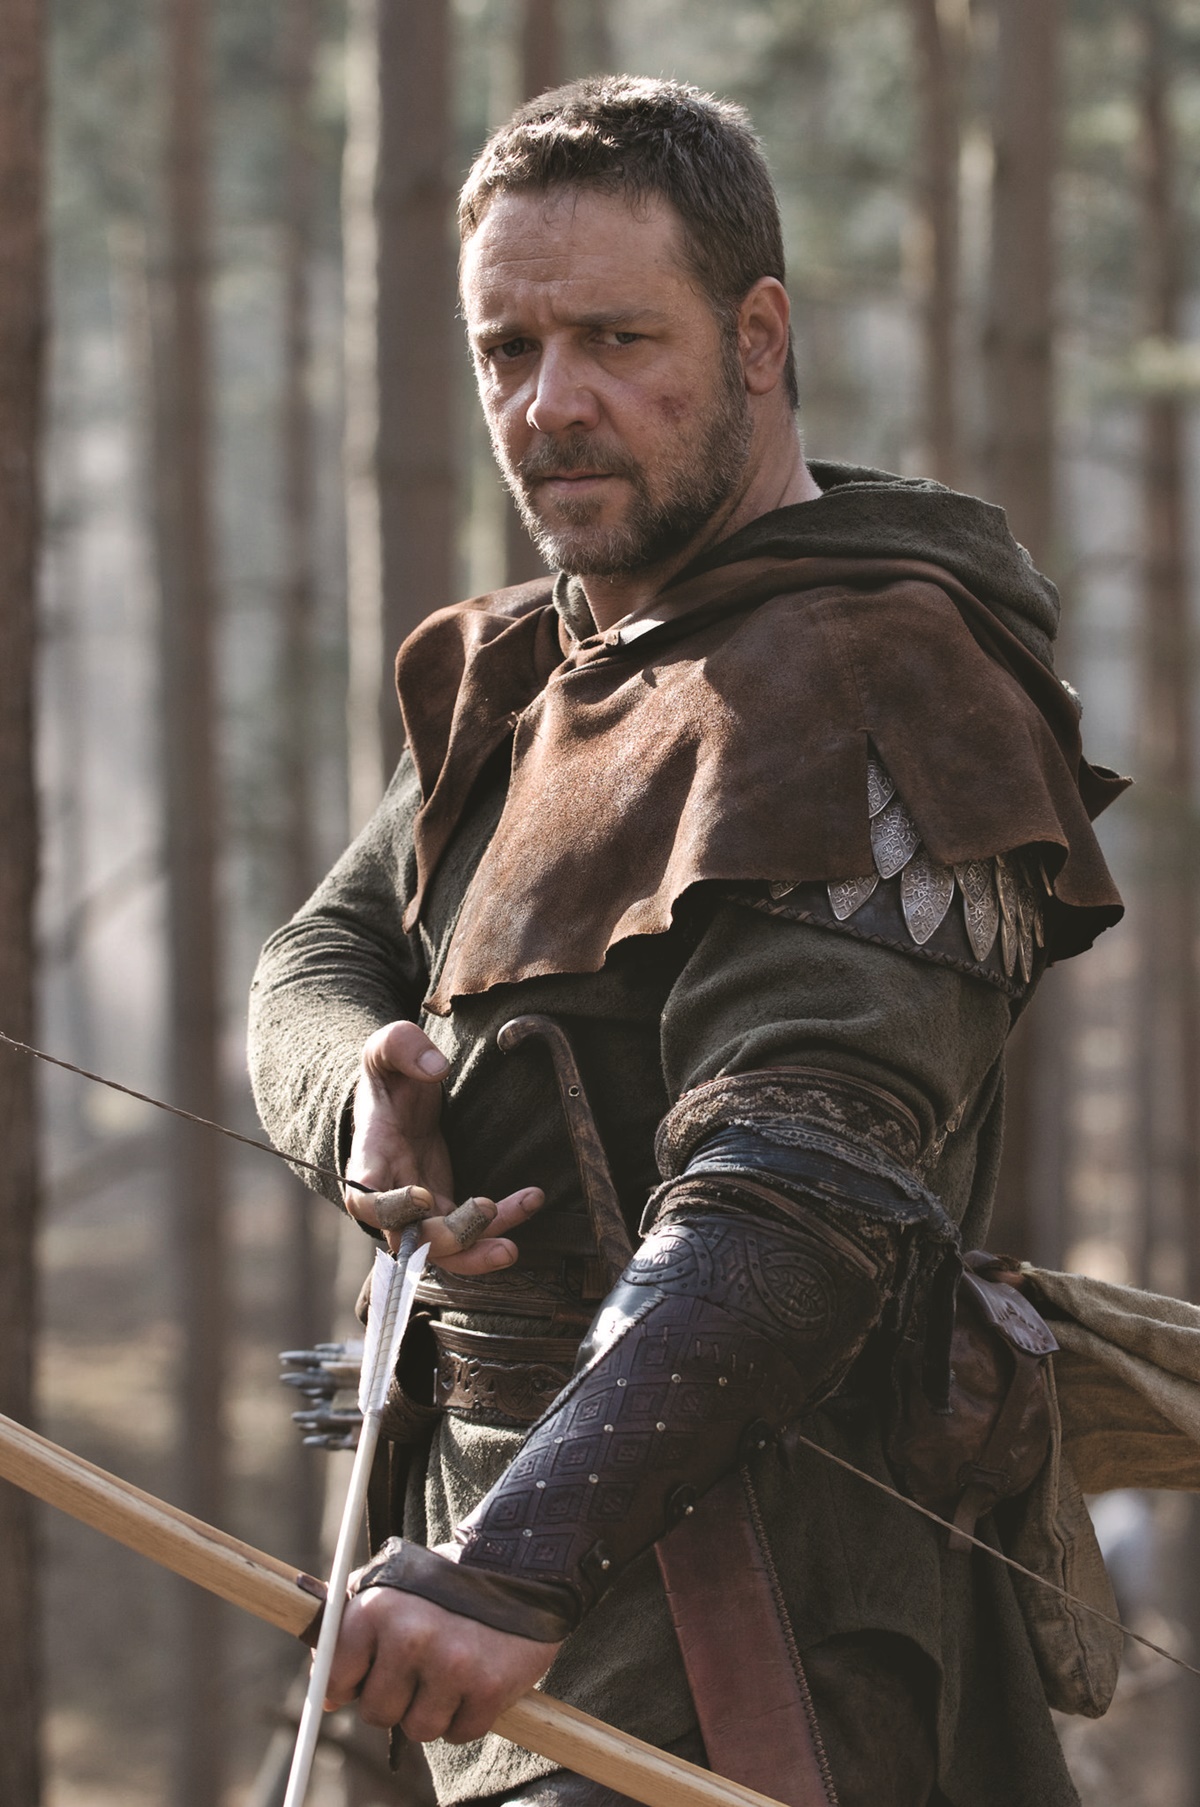 Sokkoló dolgokat vallott be Russell Crowe a Robin Hood forgatásáról